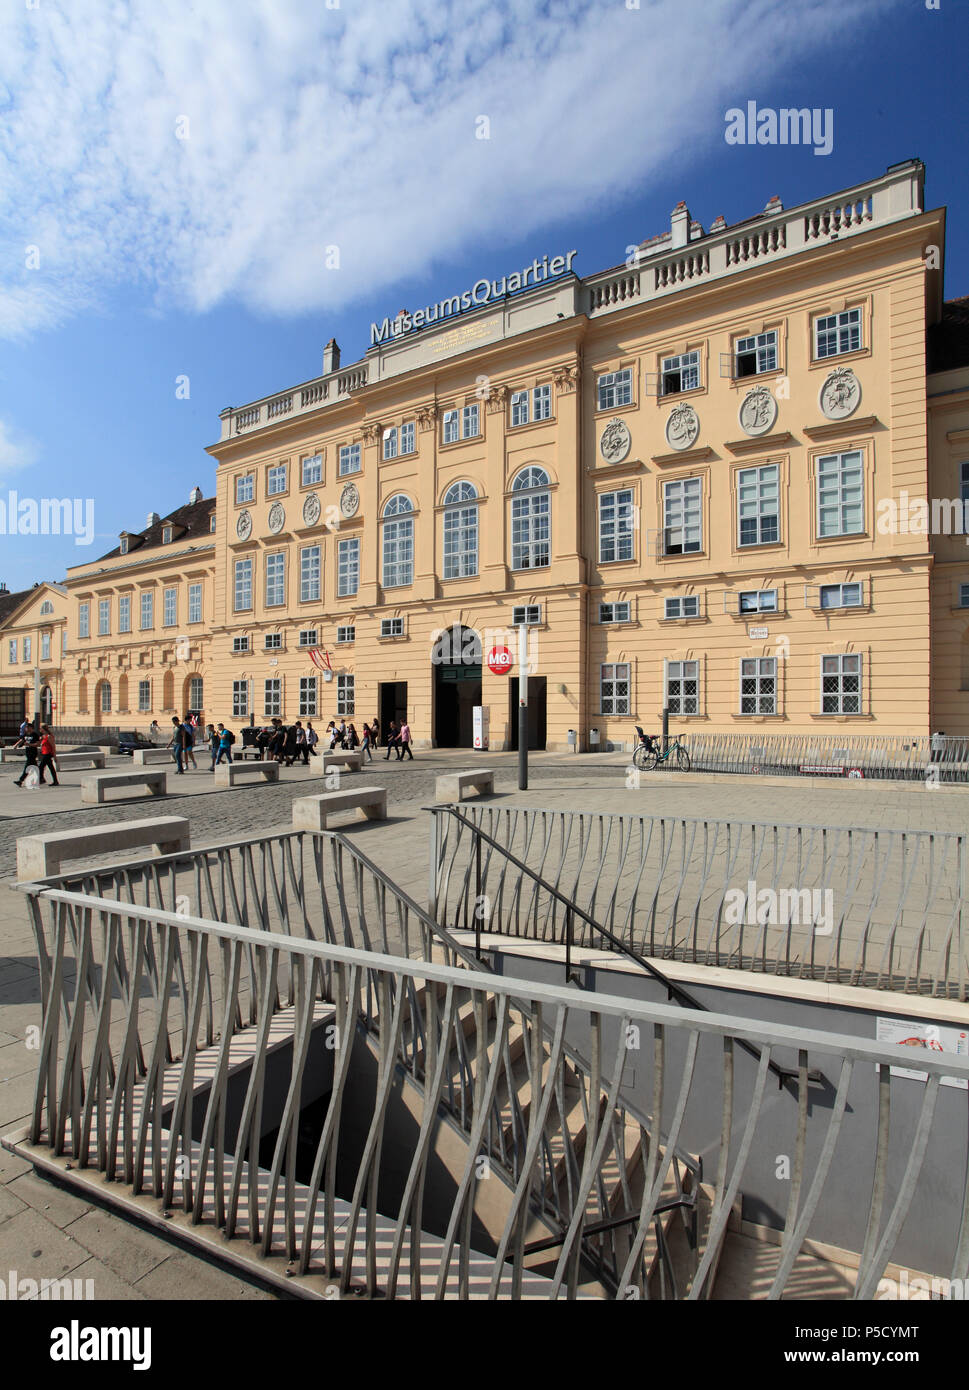 L'Autriche, Vienne, Museumsquartier, musées, Banque D'Images